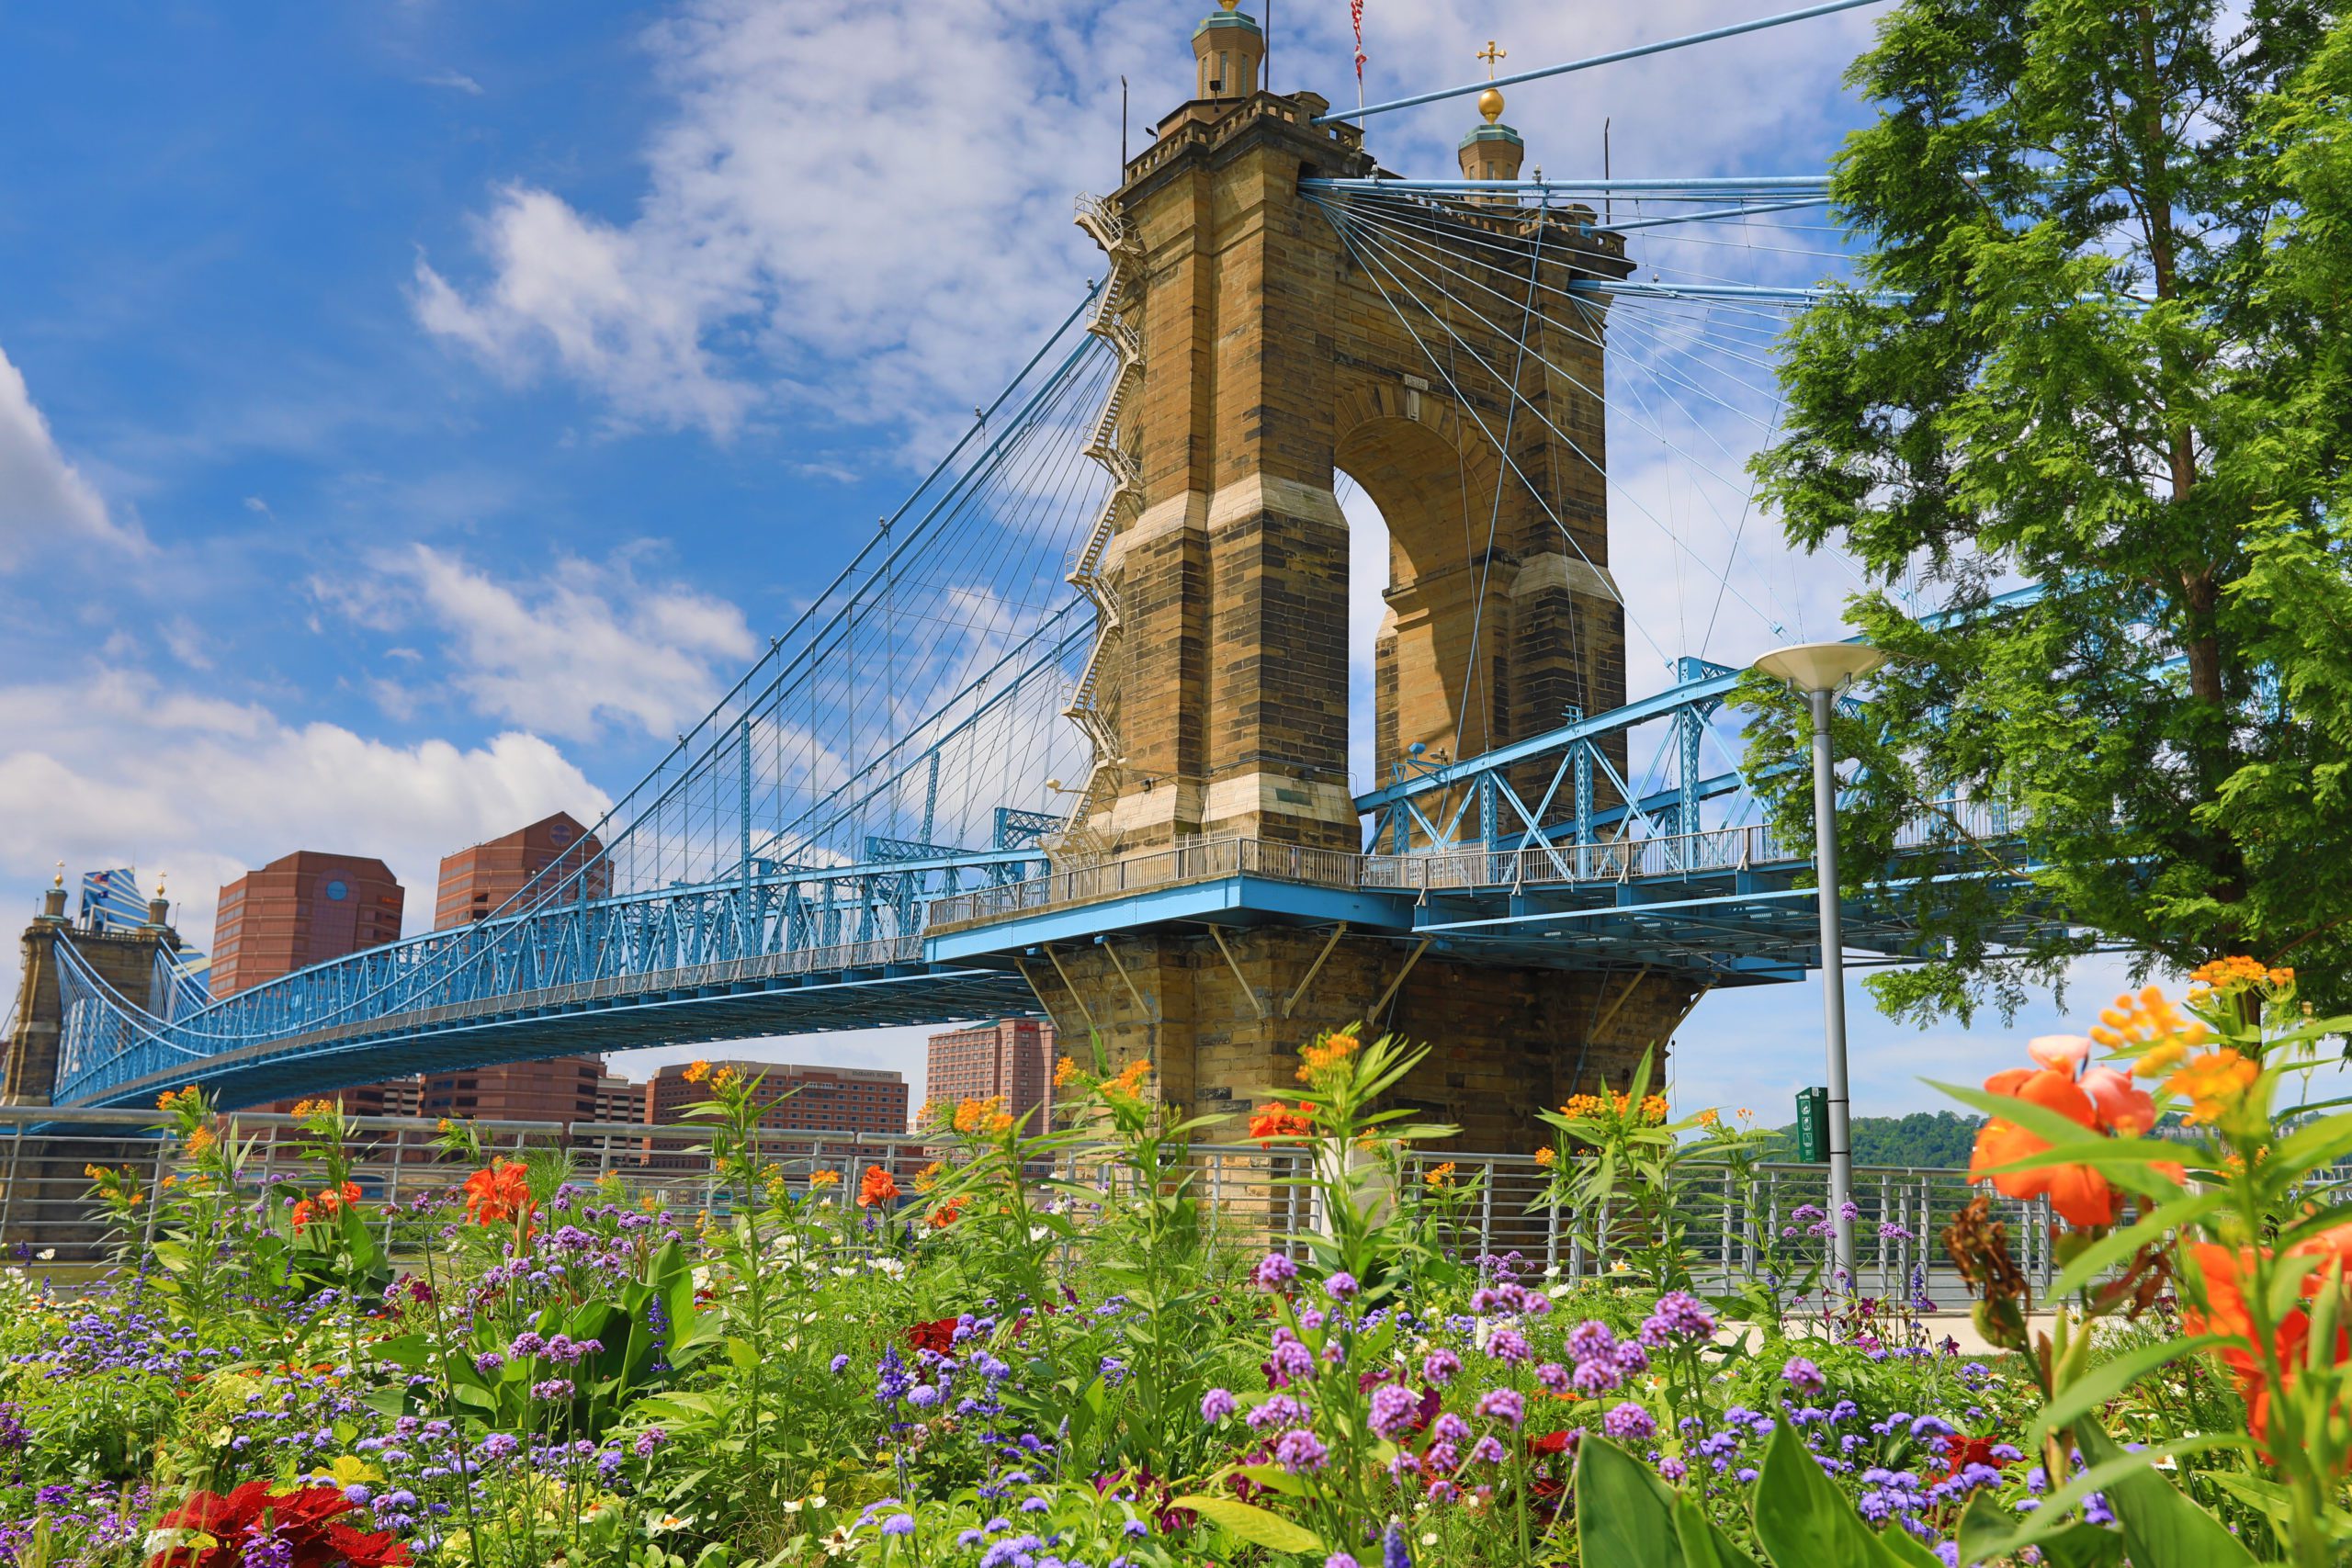 The Roebling Bridge in Cincinnati